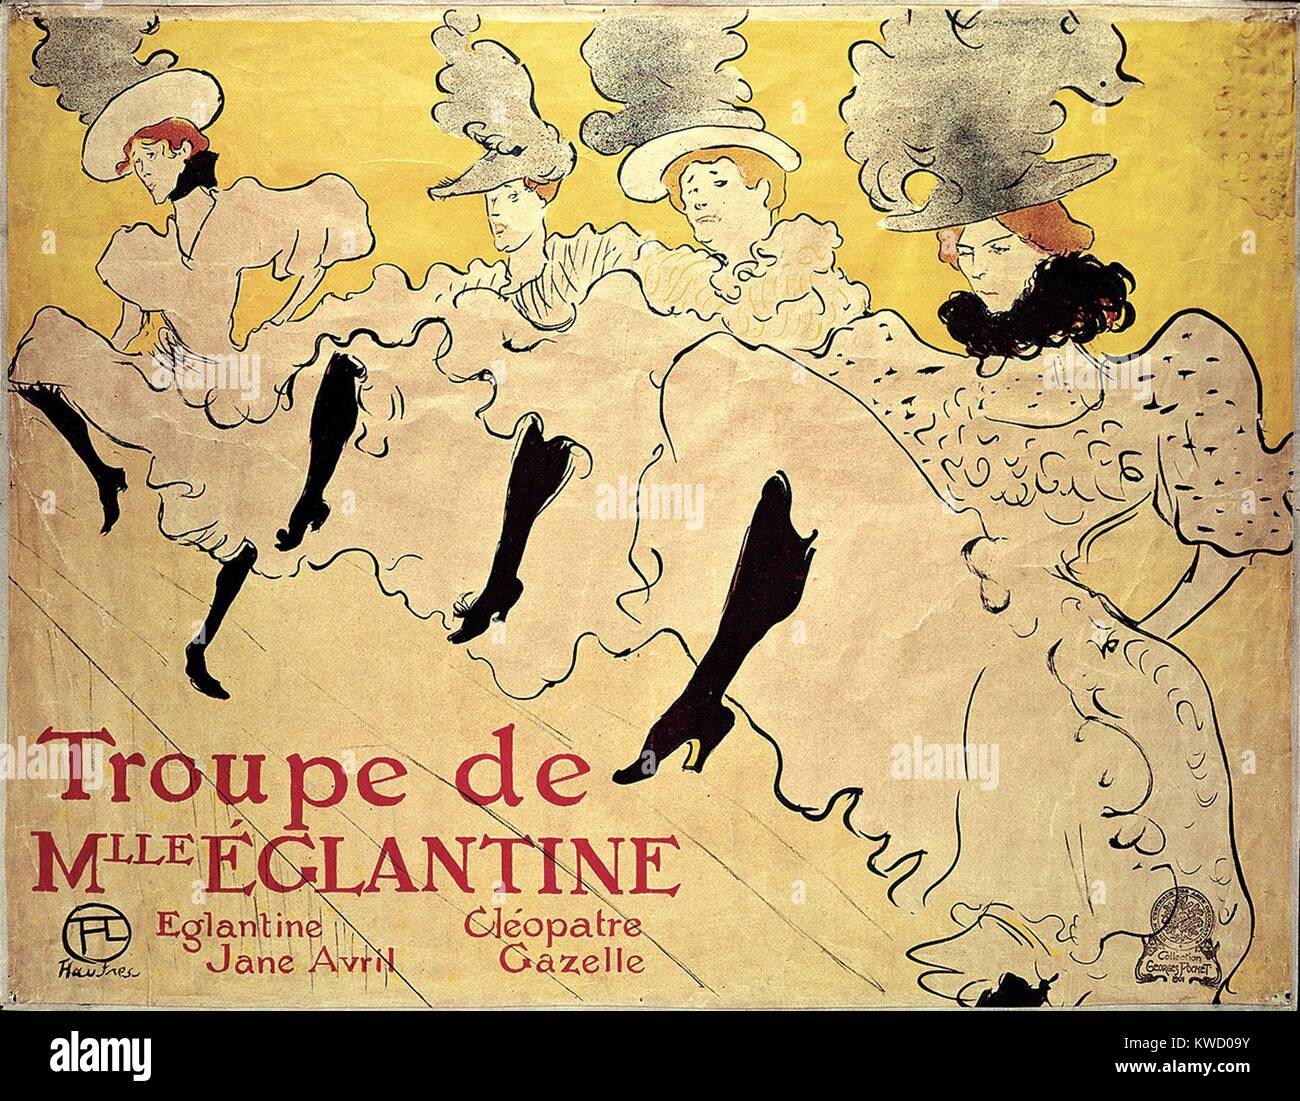 La Troupe de Mademoiselle Eglantine, Henri de Toulouse-Lautrec, 1895, Post-Impressionist stampa. La troupe de Mlle Eglantine, era un gruppo di cancan francese ballerini: Jane Avril, Mlle Eglantine, Cleopatre e gazzella. Avril ha commissionato questa (litografica BSLOC 2017 5 67) Foto Stock